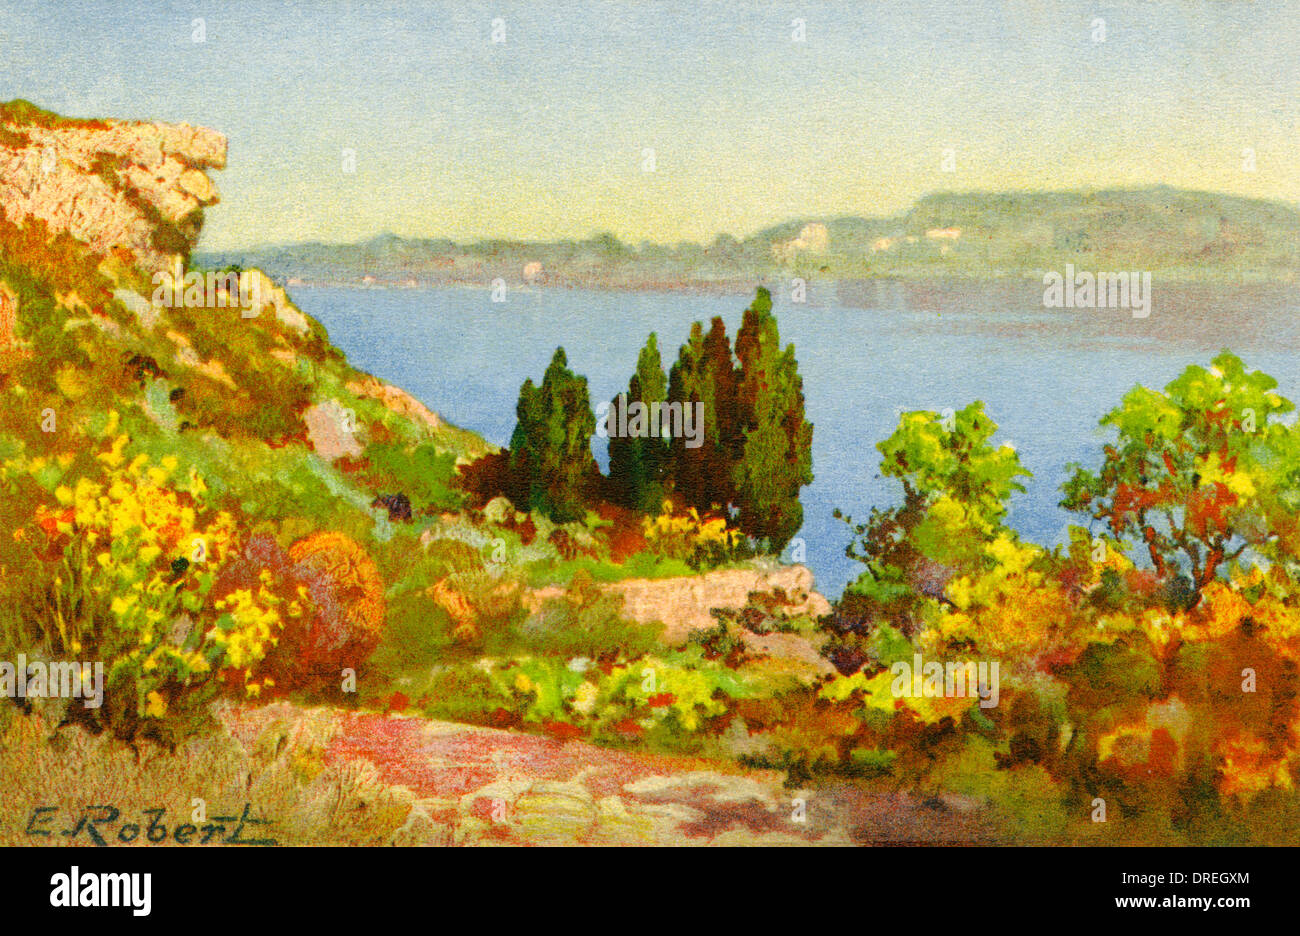 Colourful scene in the Crimea, Russia Stock Photo